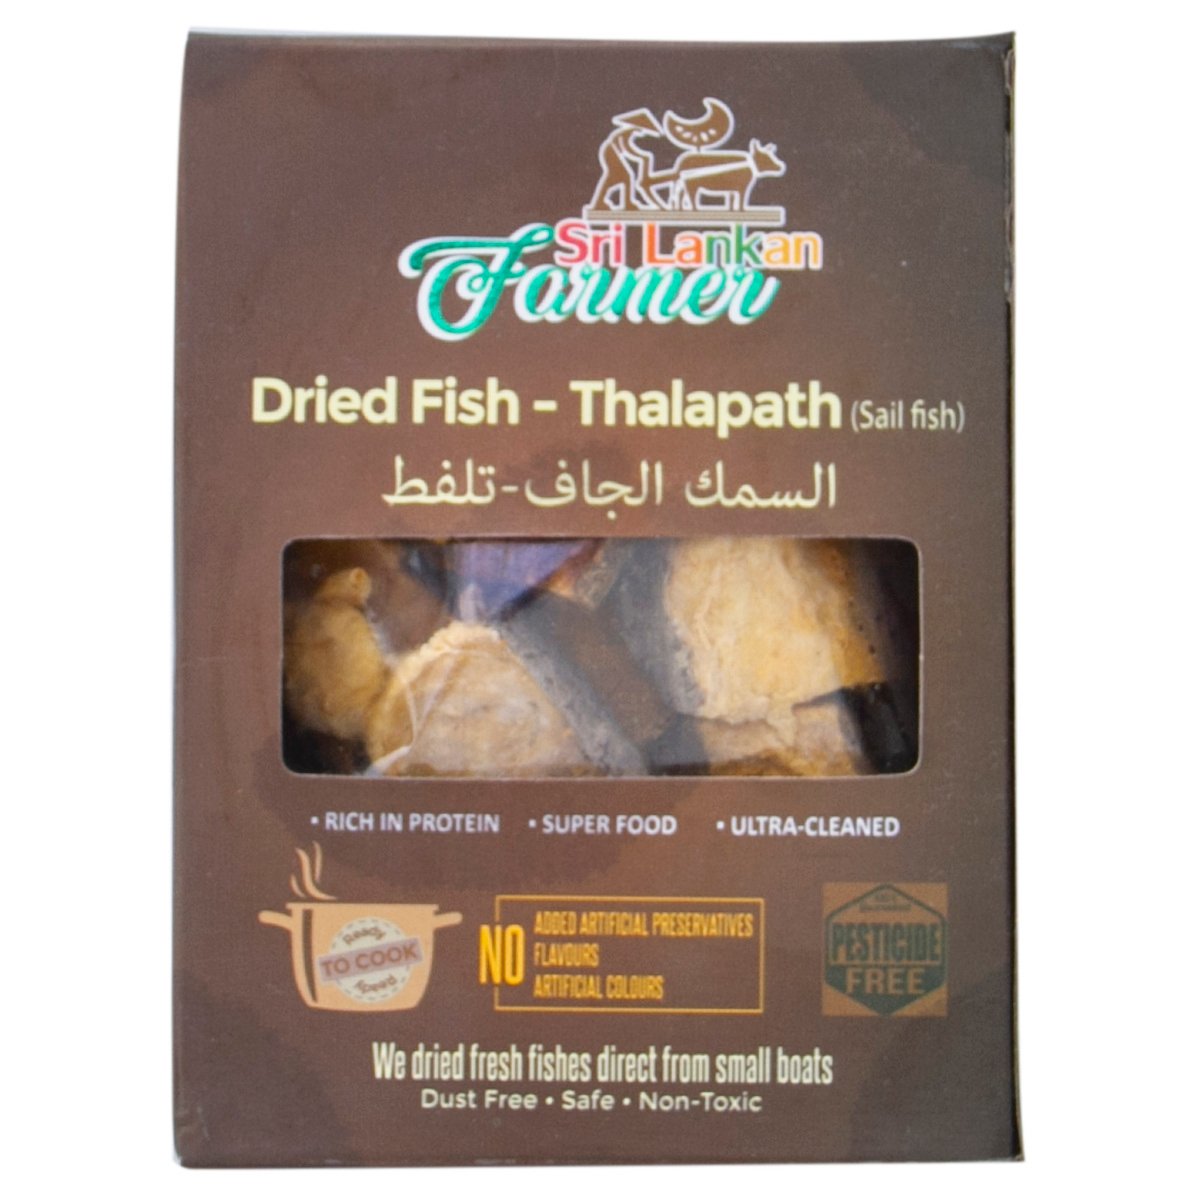 Sri Lankan Farmer Dried Fish Thalapath 100g